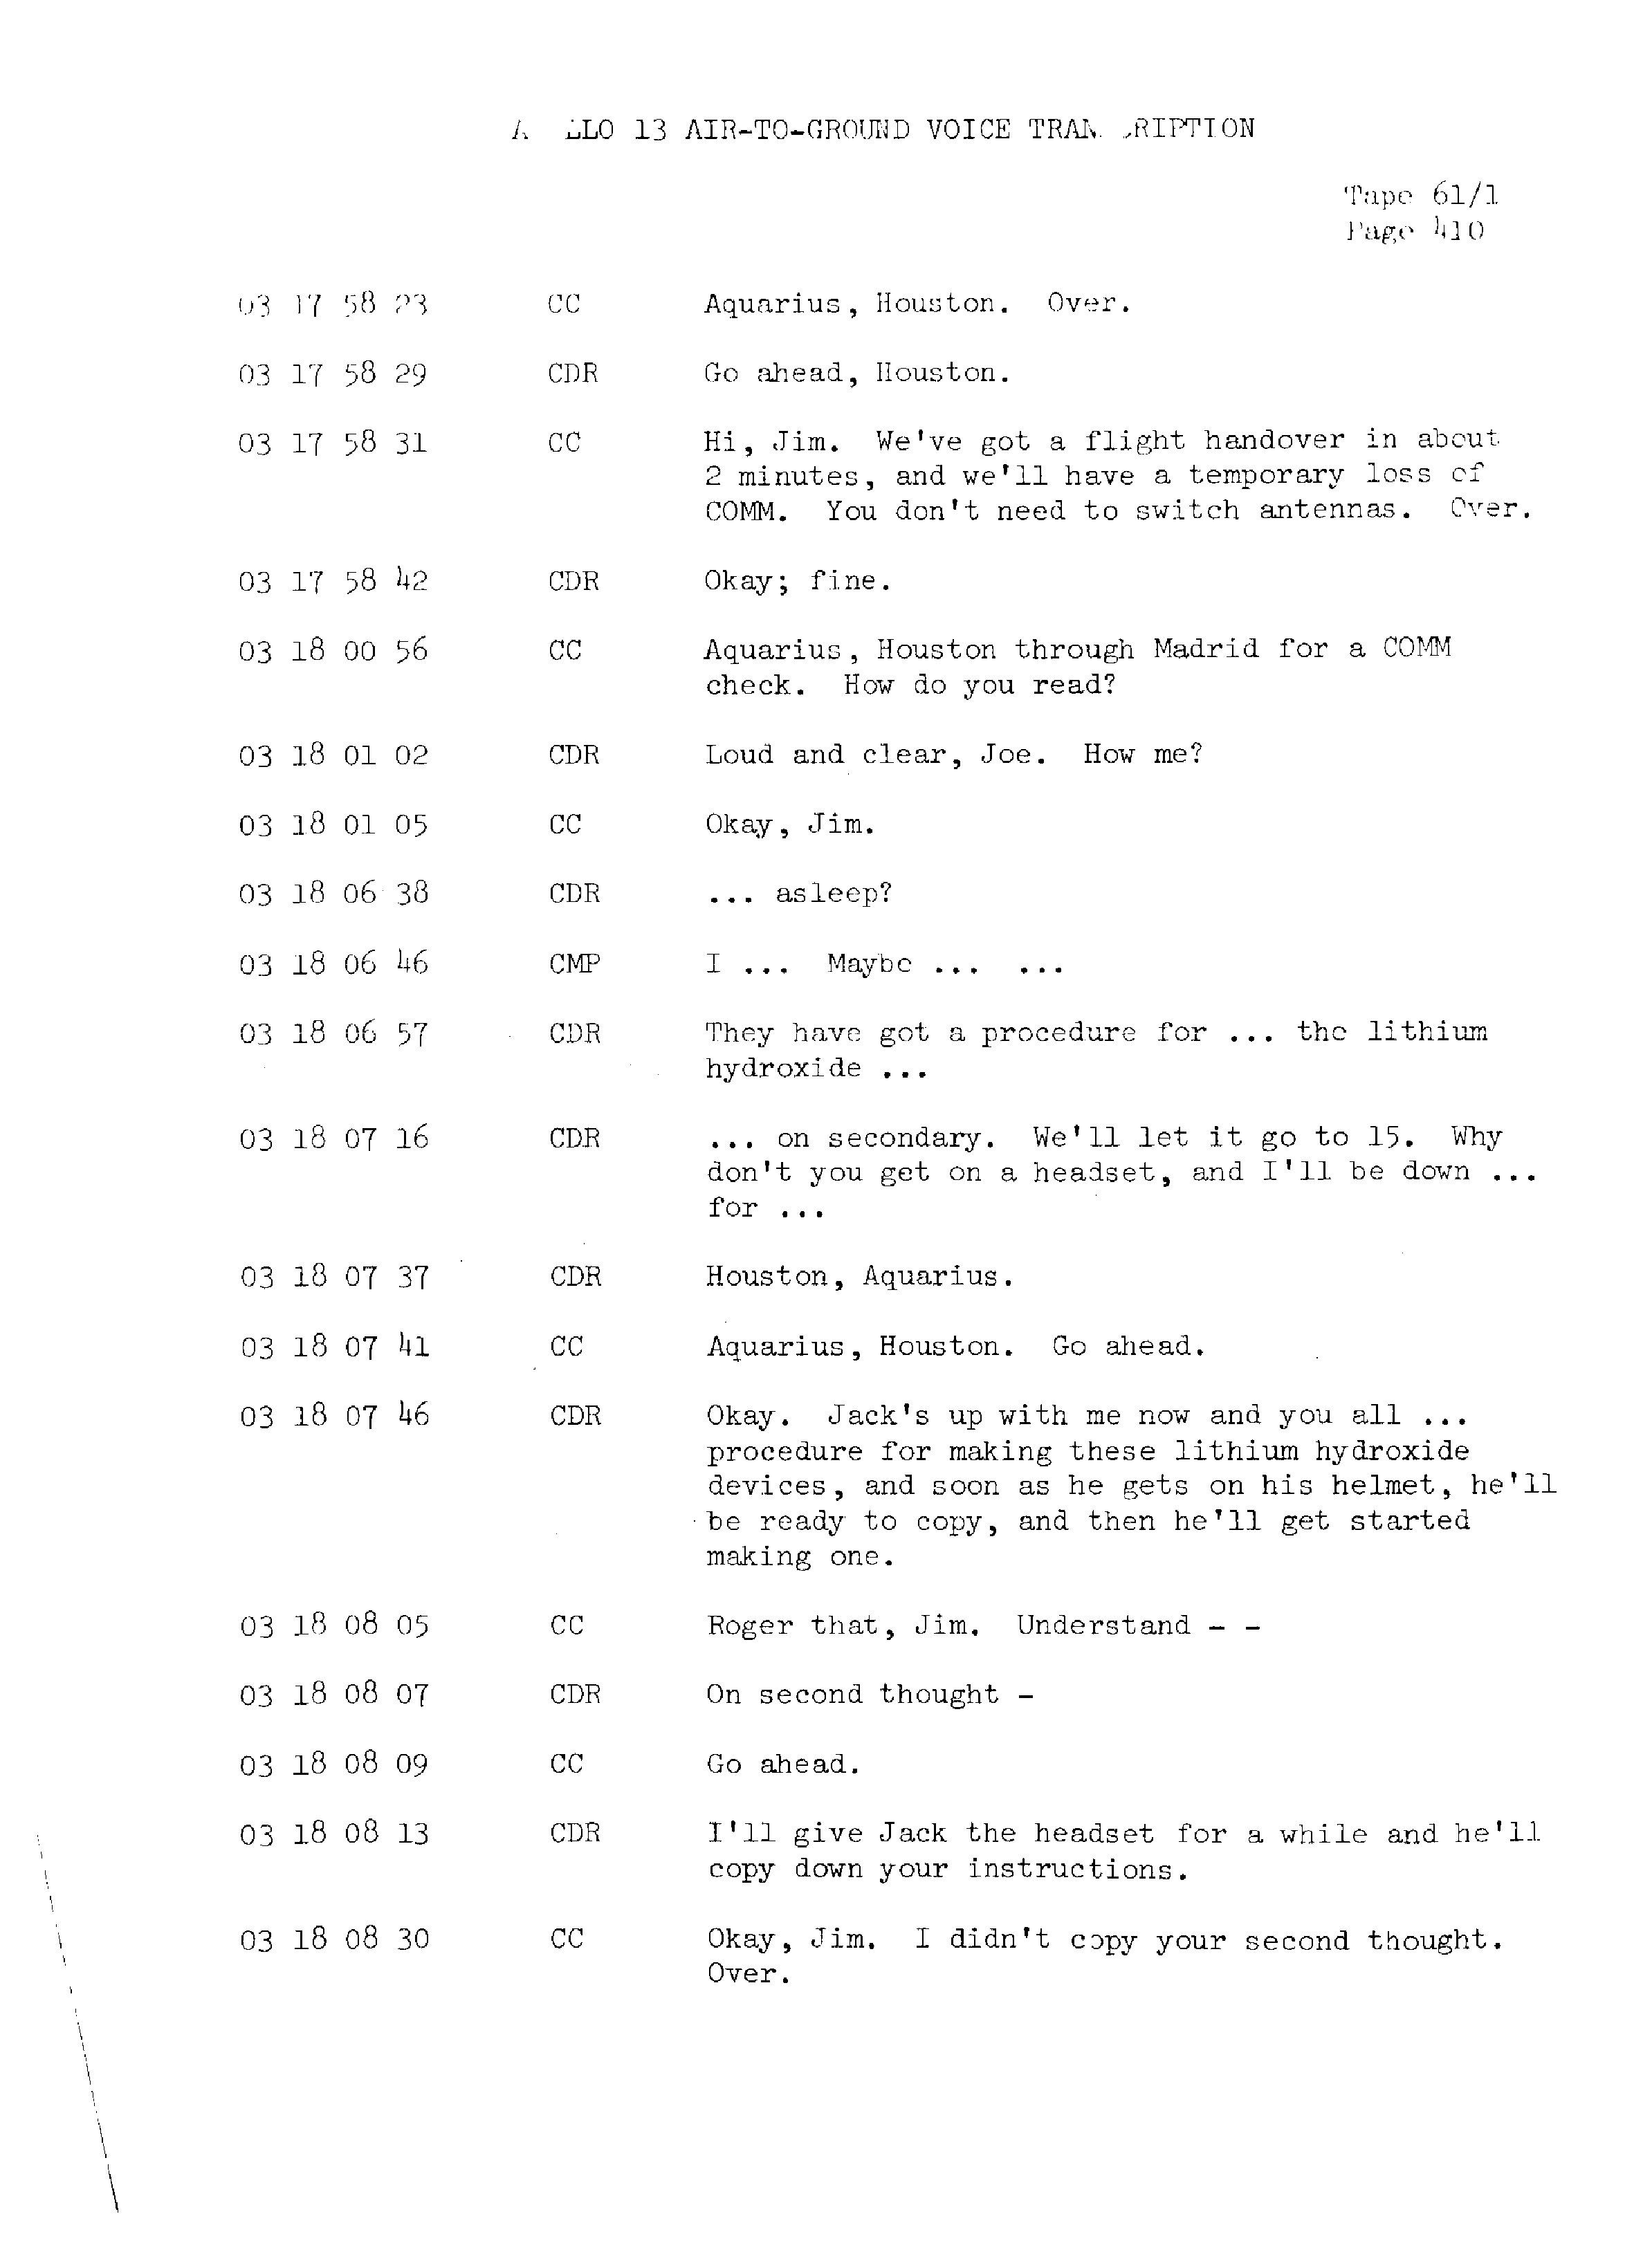 Page 417 of Apollo 13’s original transcript